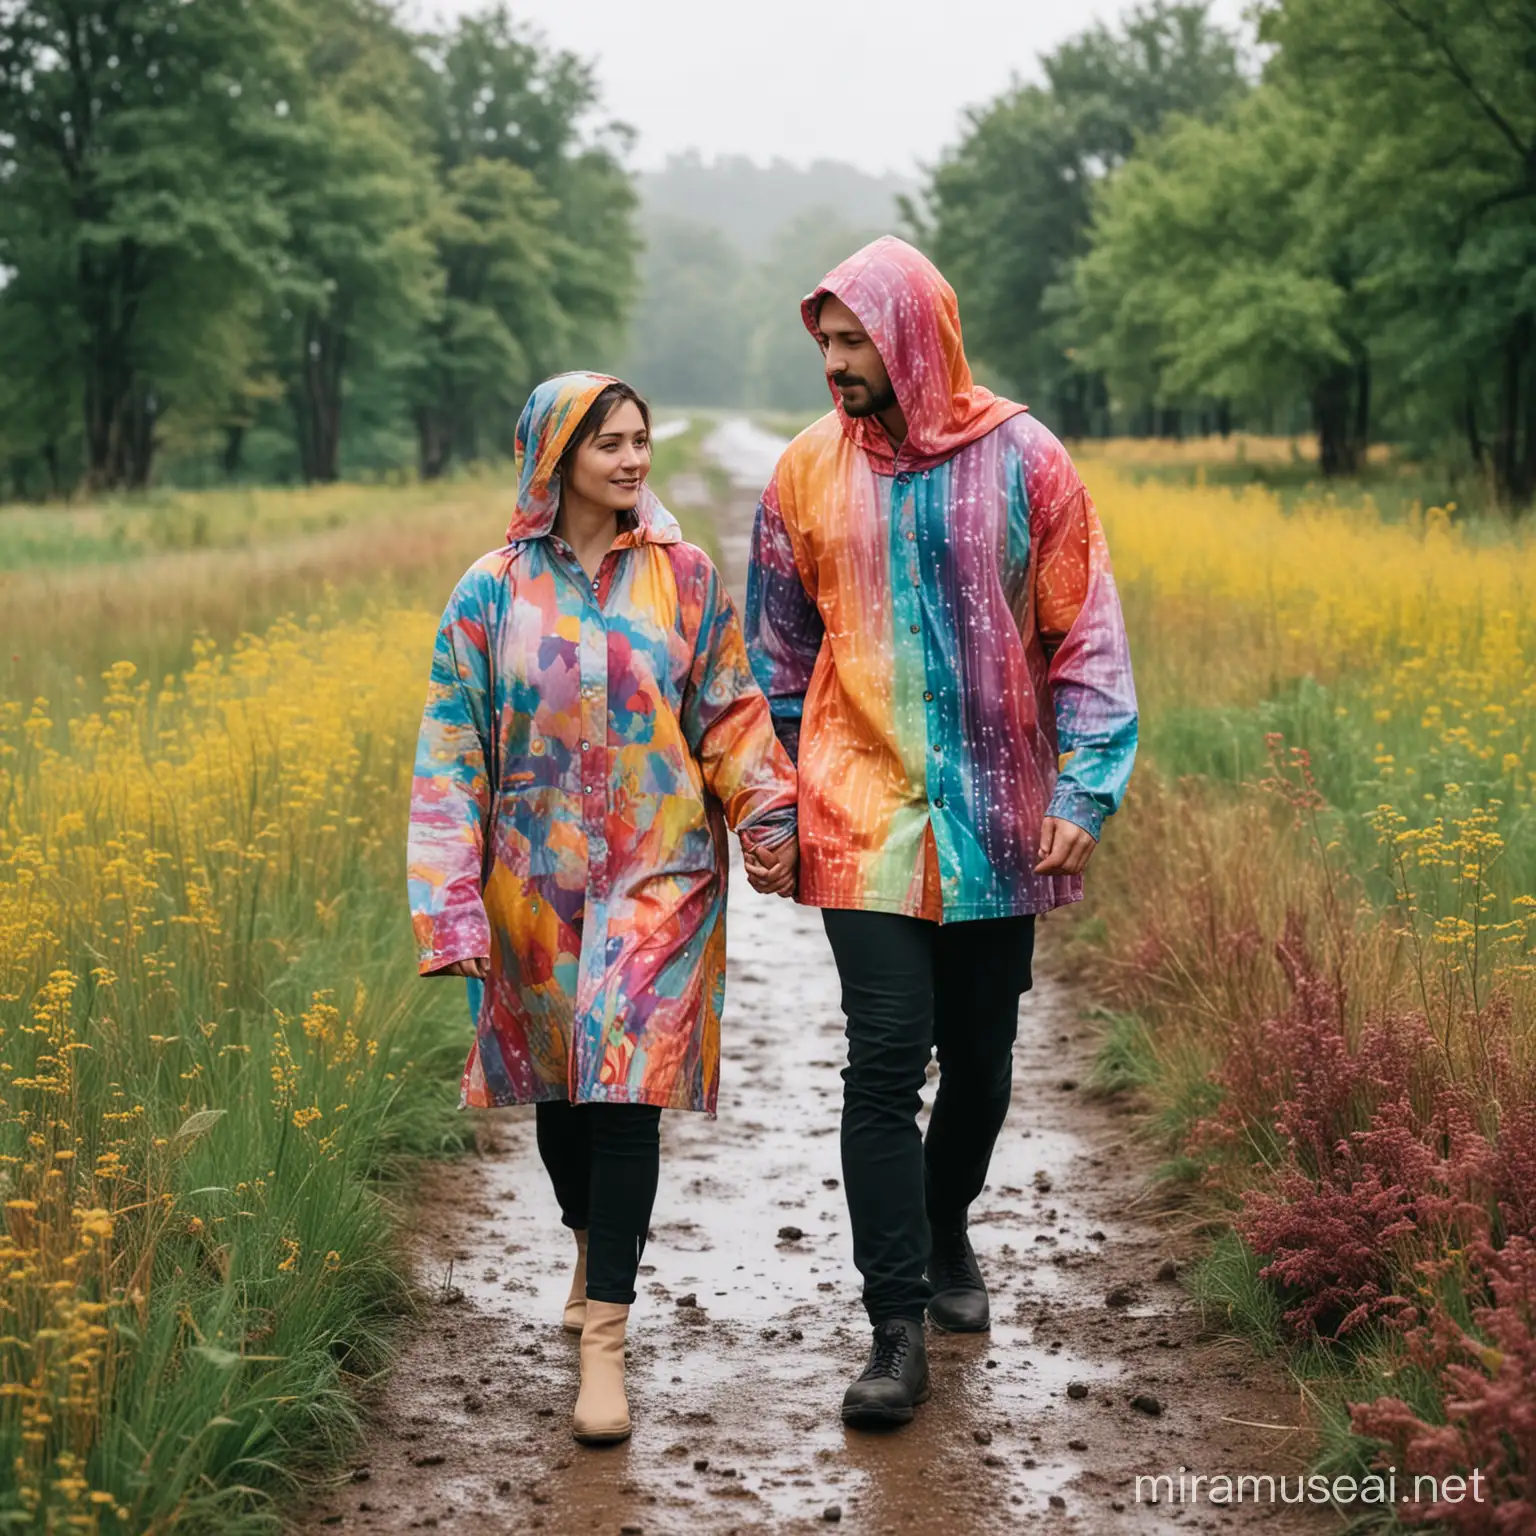 Мужчина и женщина гуляют, лица спокойные, добрые, одежда закрытая цветная, на улице пасмурно, природа красивая